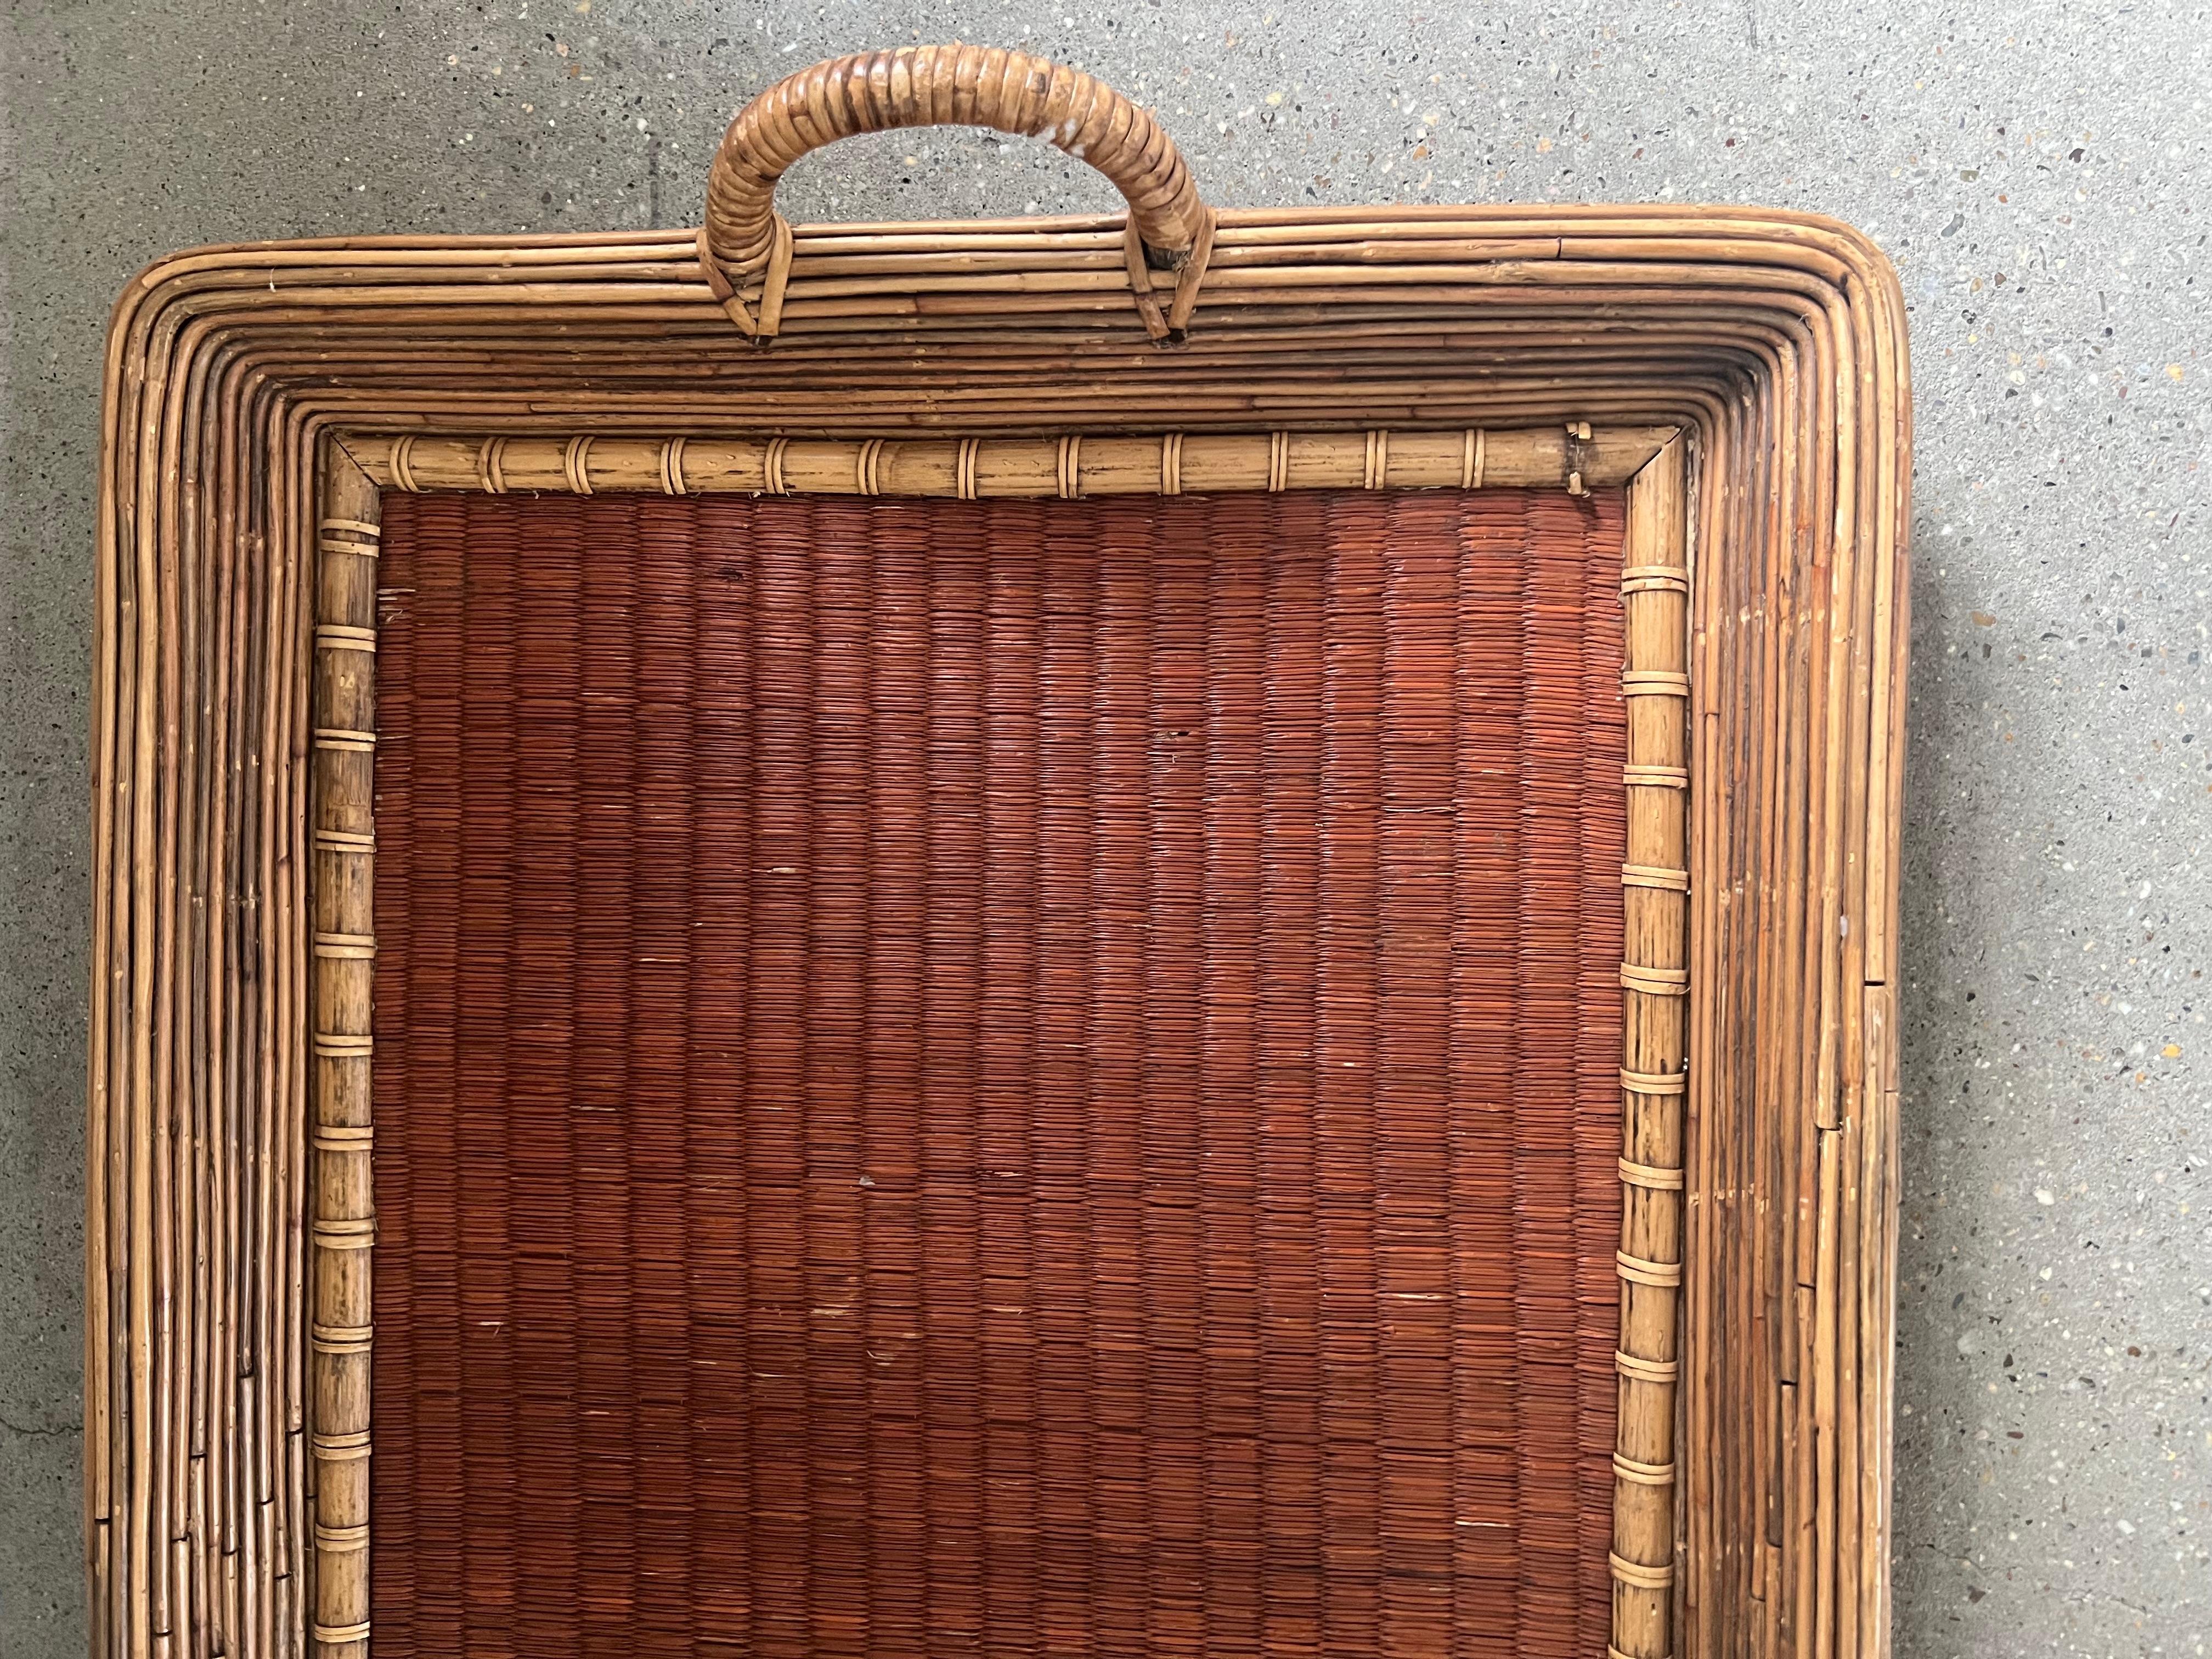 Das längliche Design des Tabletts, ein Markenzeichen japanischer Ästhetik, bietet eine großzügige Fläche zum Servieren und Ausstellen, während die komplizierten Flechtmuster einen Hauch von Raffinesse verleihen. Die natürliche Schönheit des Bambus